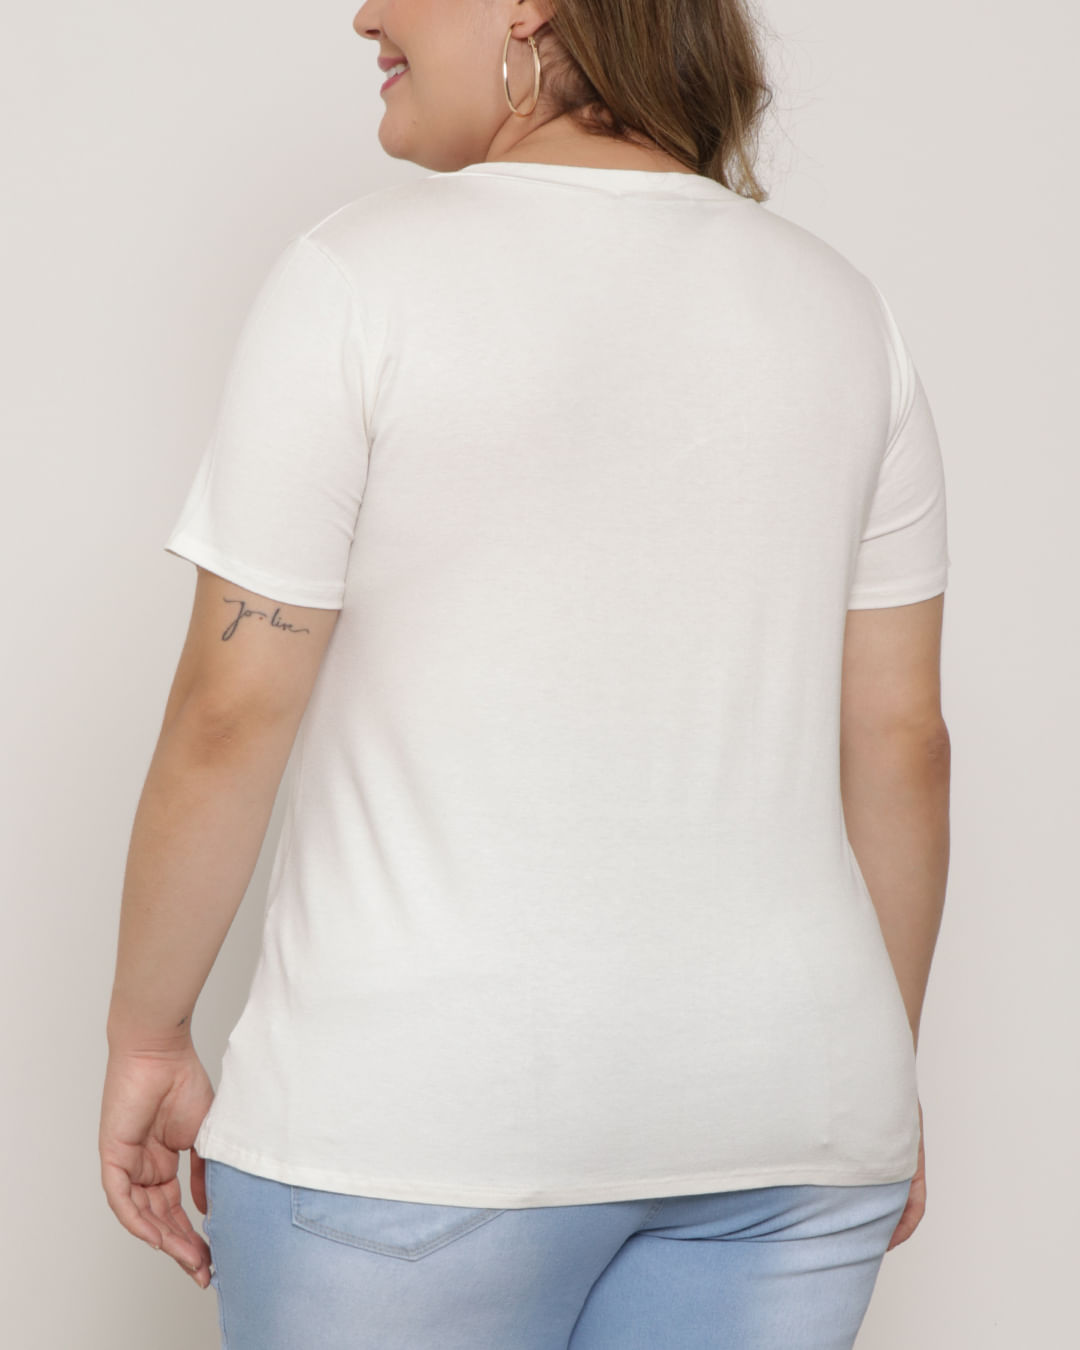 Blusa-Feminino-Plus-Size-Decote-V-Estampada-Strass-Off-White-